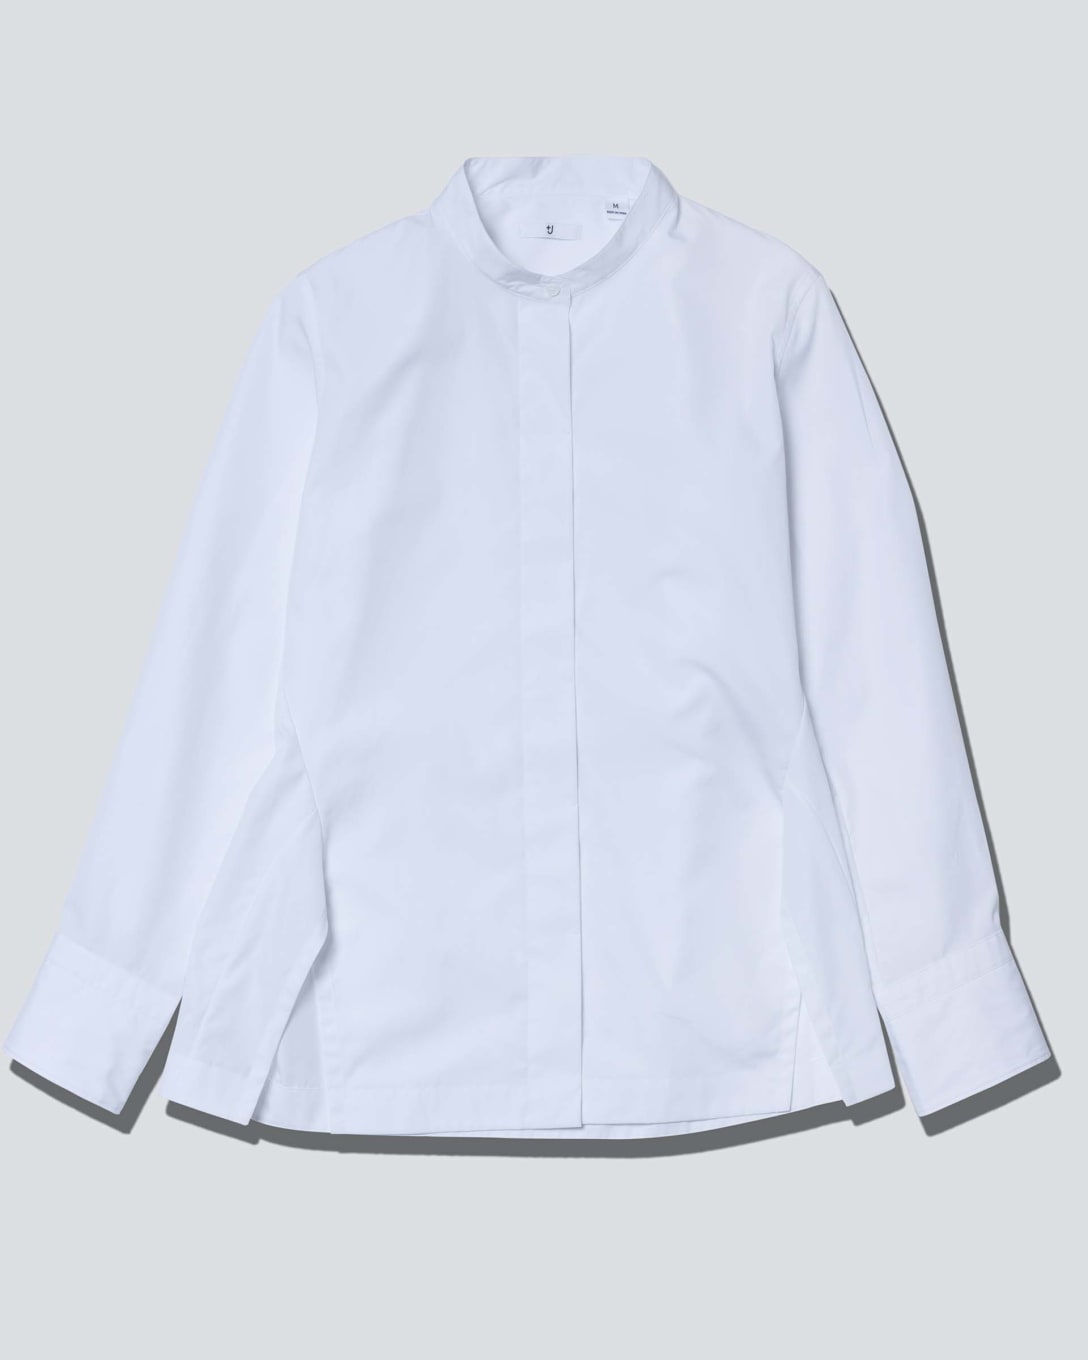 スーピマコットンスタンドカラーシャツ（長袖）（ホワイト、3990円） Image by FASHIONSNAP